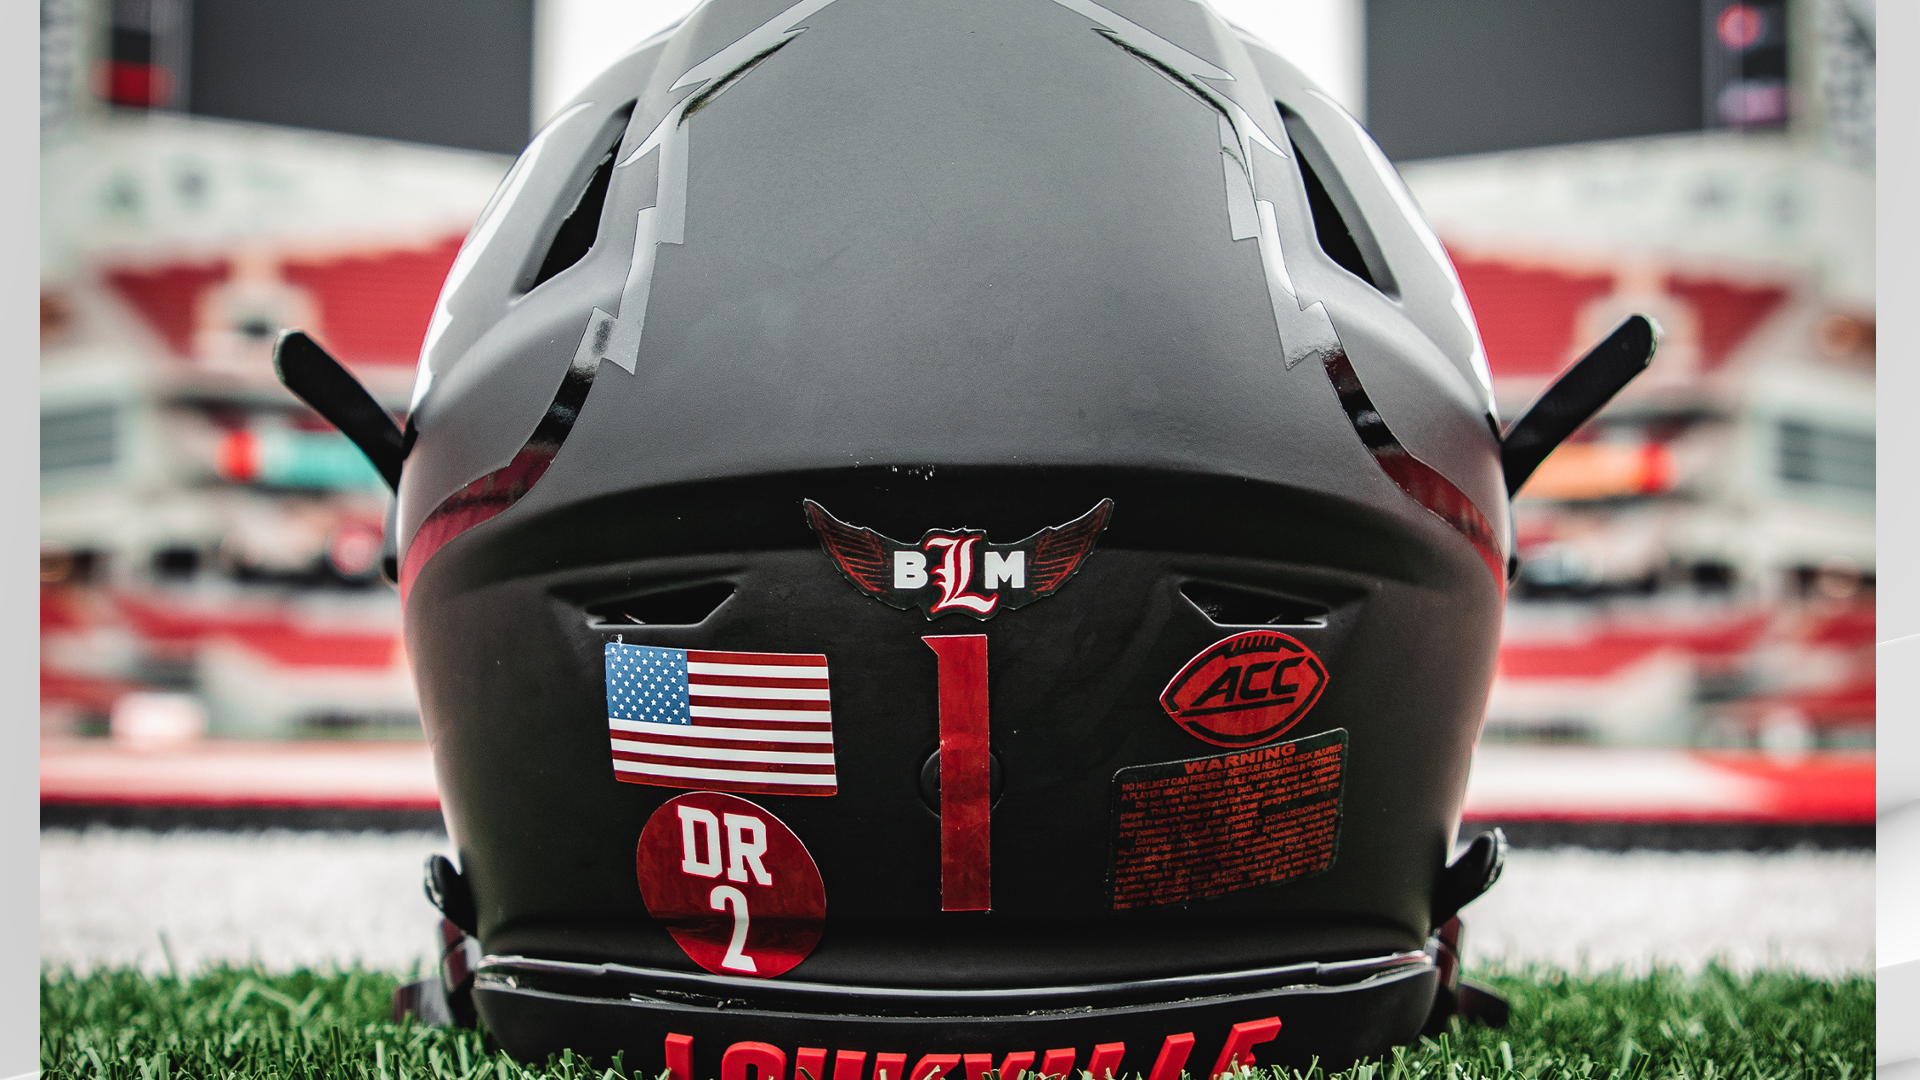 Louisville Cardinals Helmet Emblem